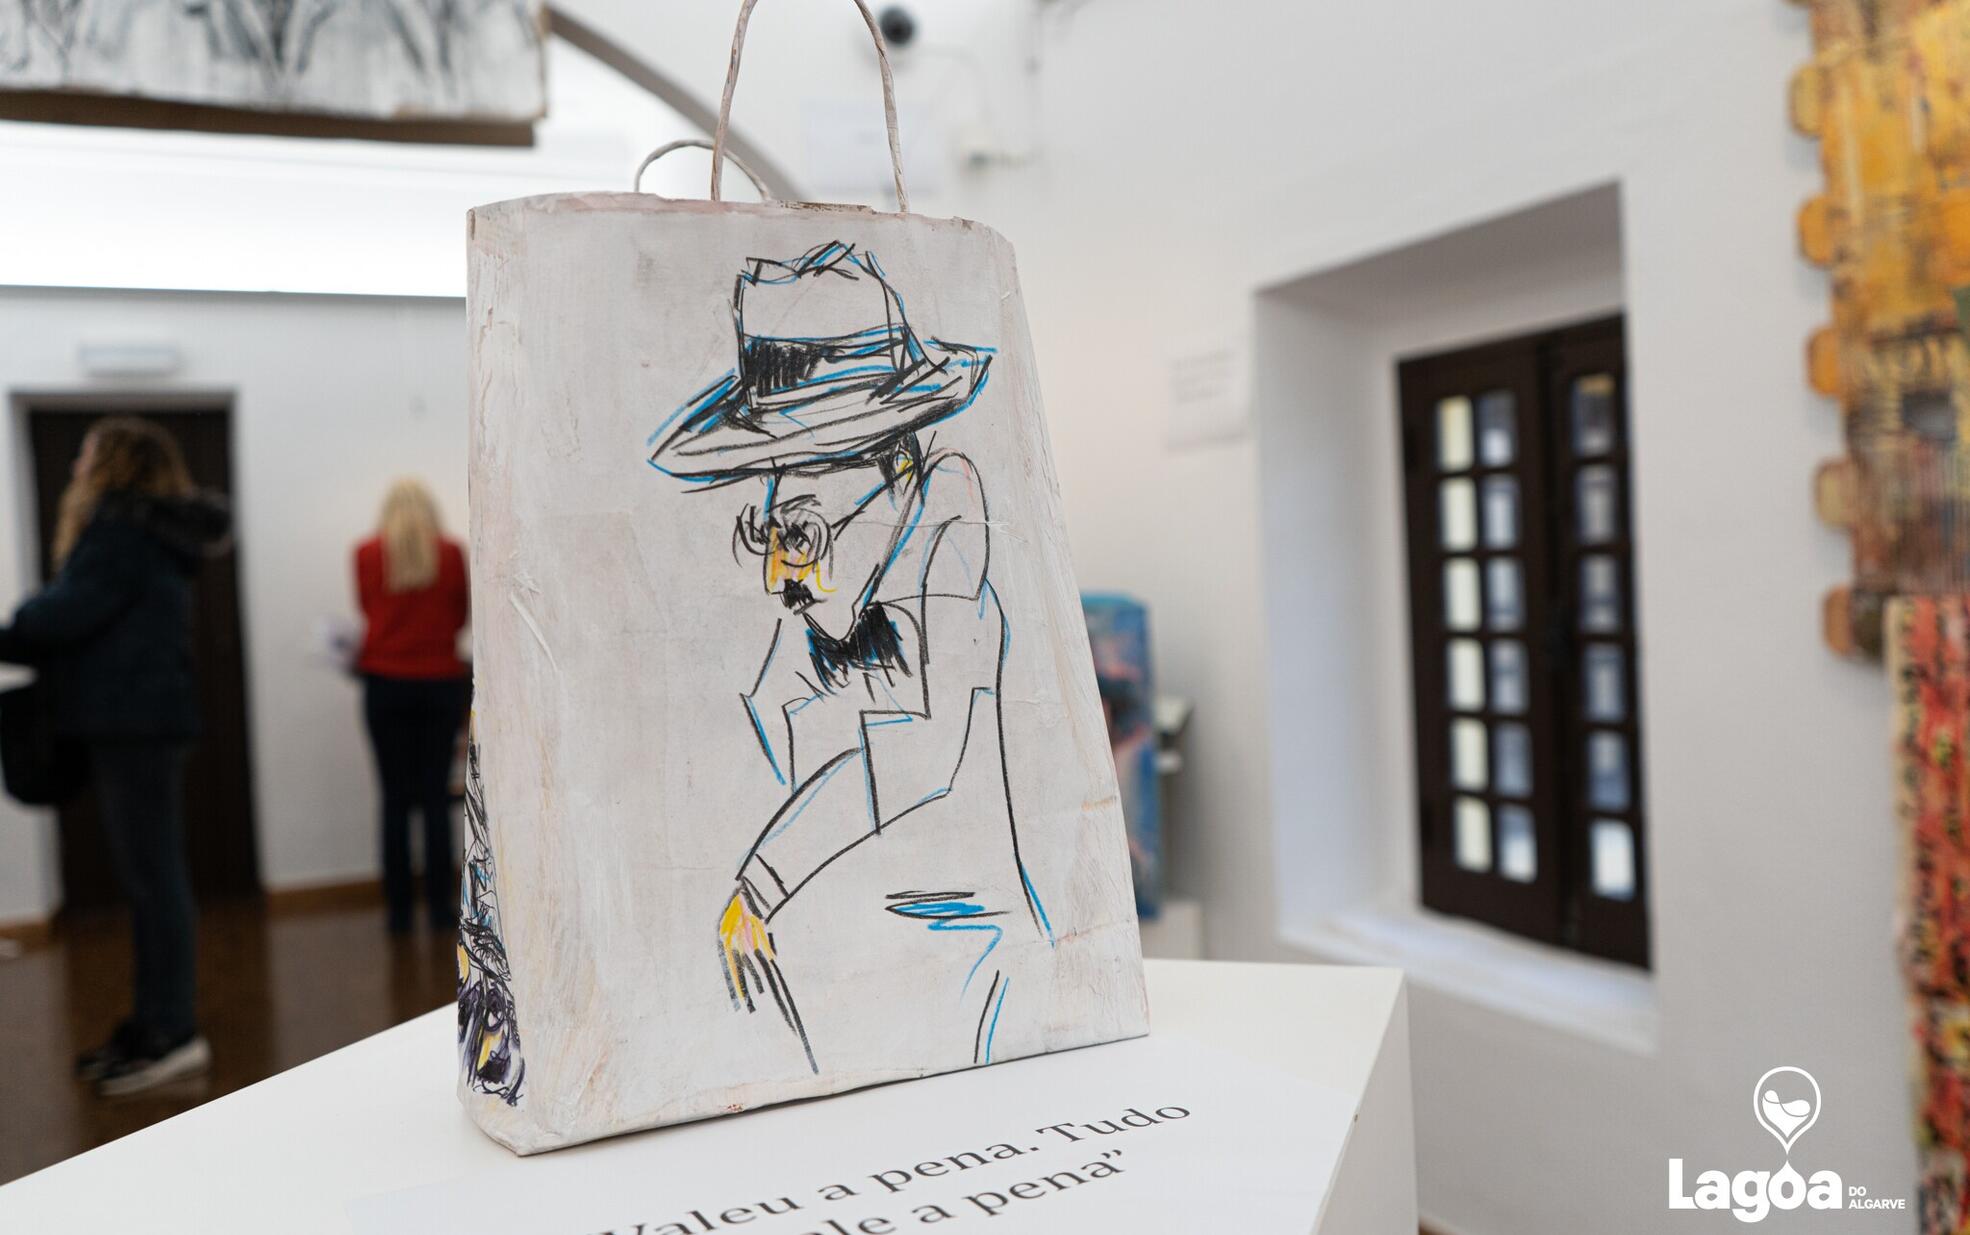 Lagoa inaugurou a exposição “Fernando Pessoa, de Pessoa em Pessoas” do artista Patico